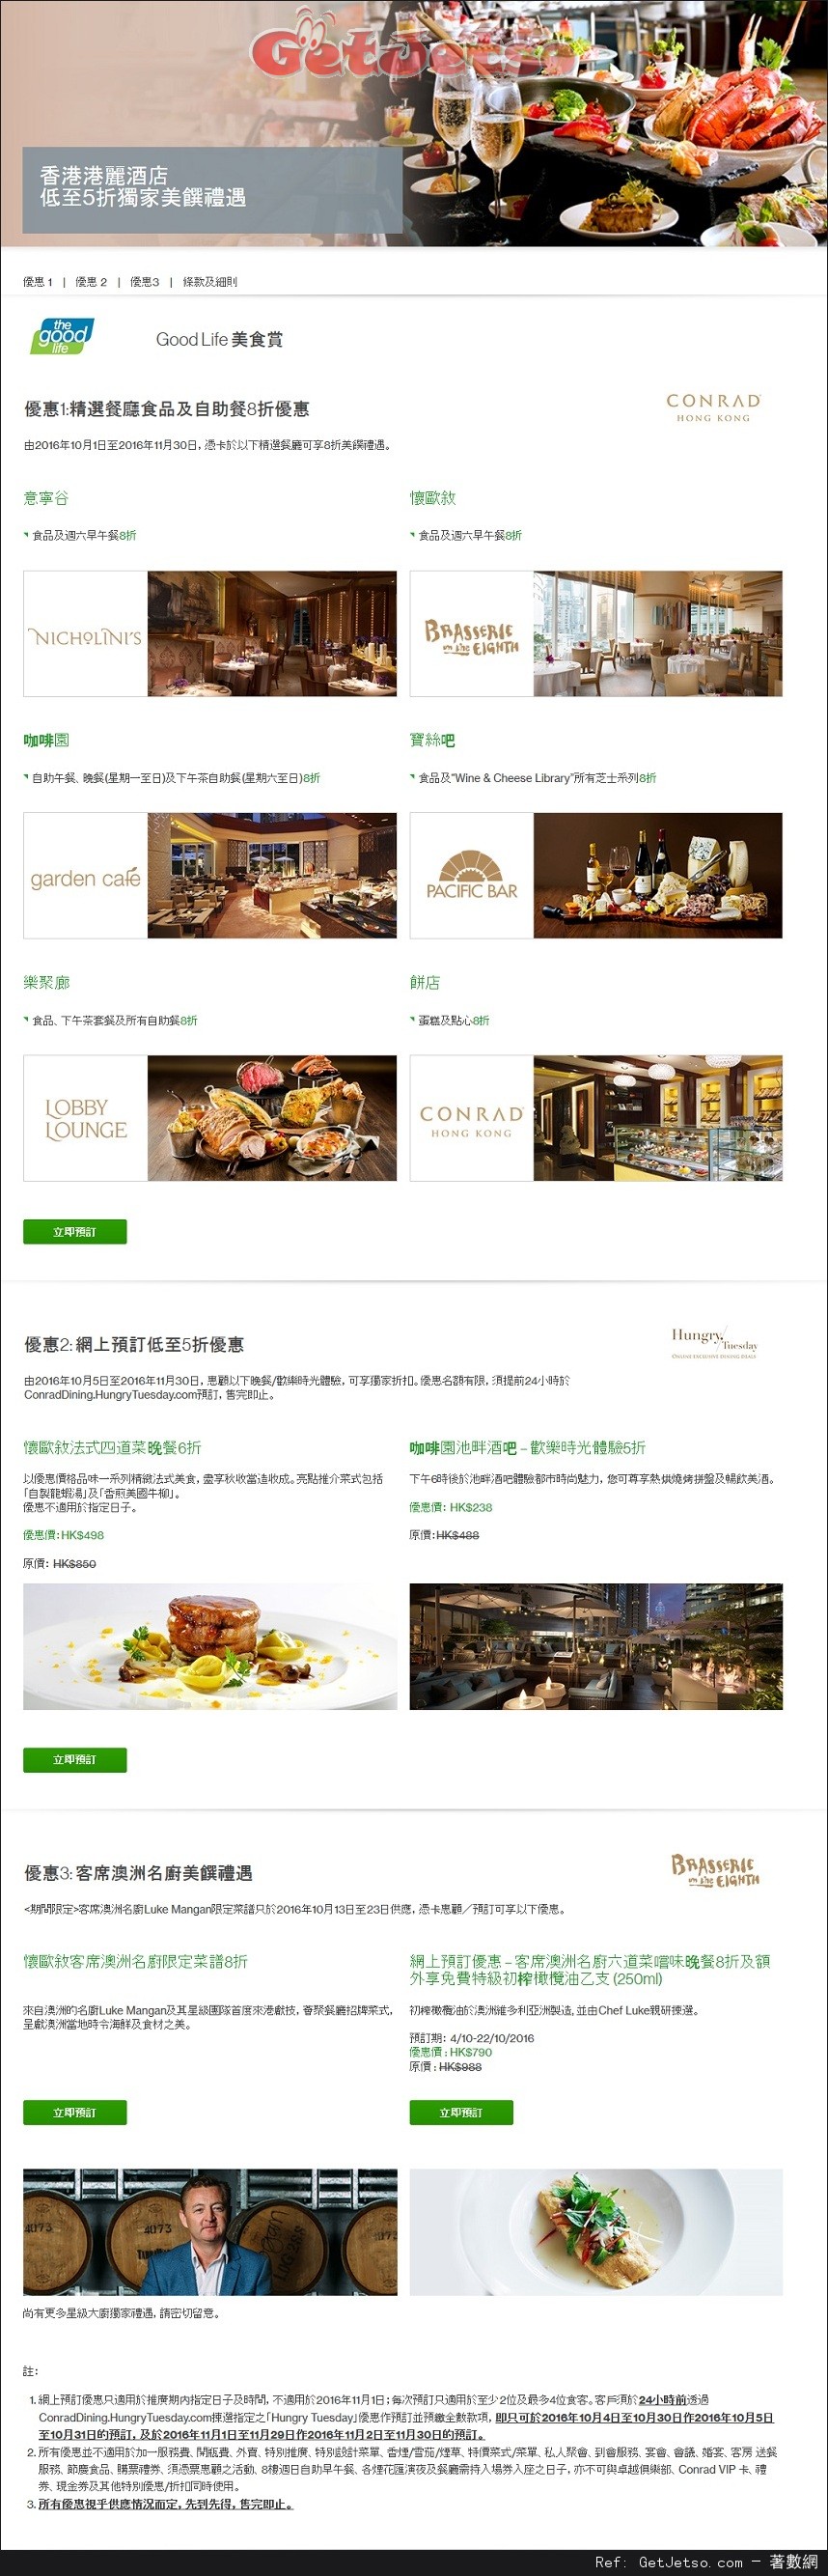 渣打信用卡享香港港麗酒店低至5折獨家美饌優惠(至16年11月30日)圖片1